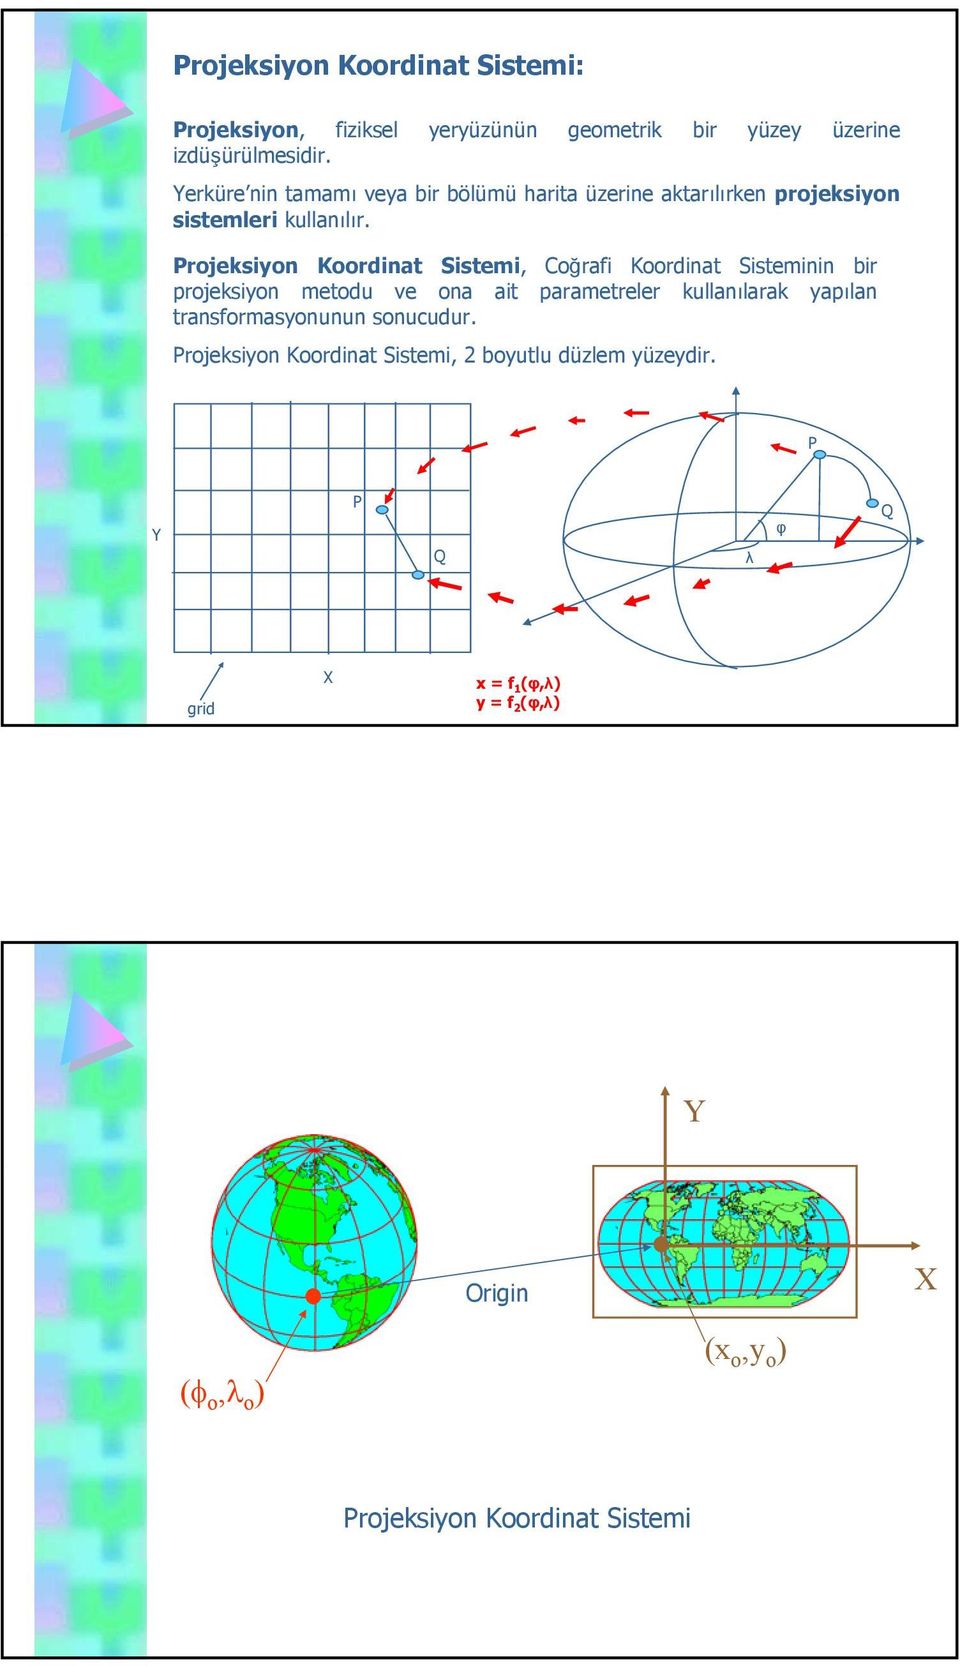 Projeksiyon Koordinat Sistemi, Coğrafi Koordinat Sisteminin bir projeksiyon metodu ve ona ait parametreler kullanılarak yapılan